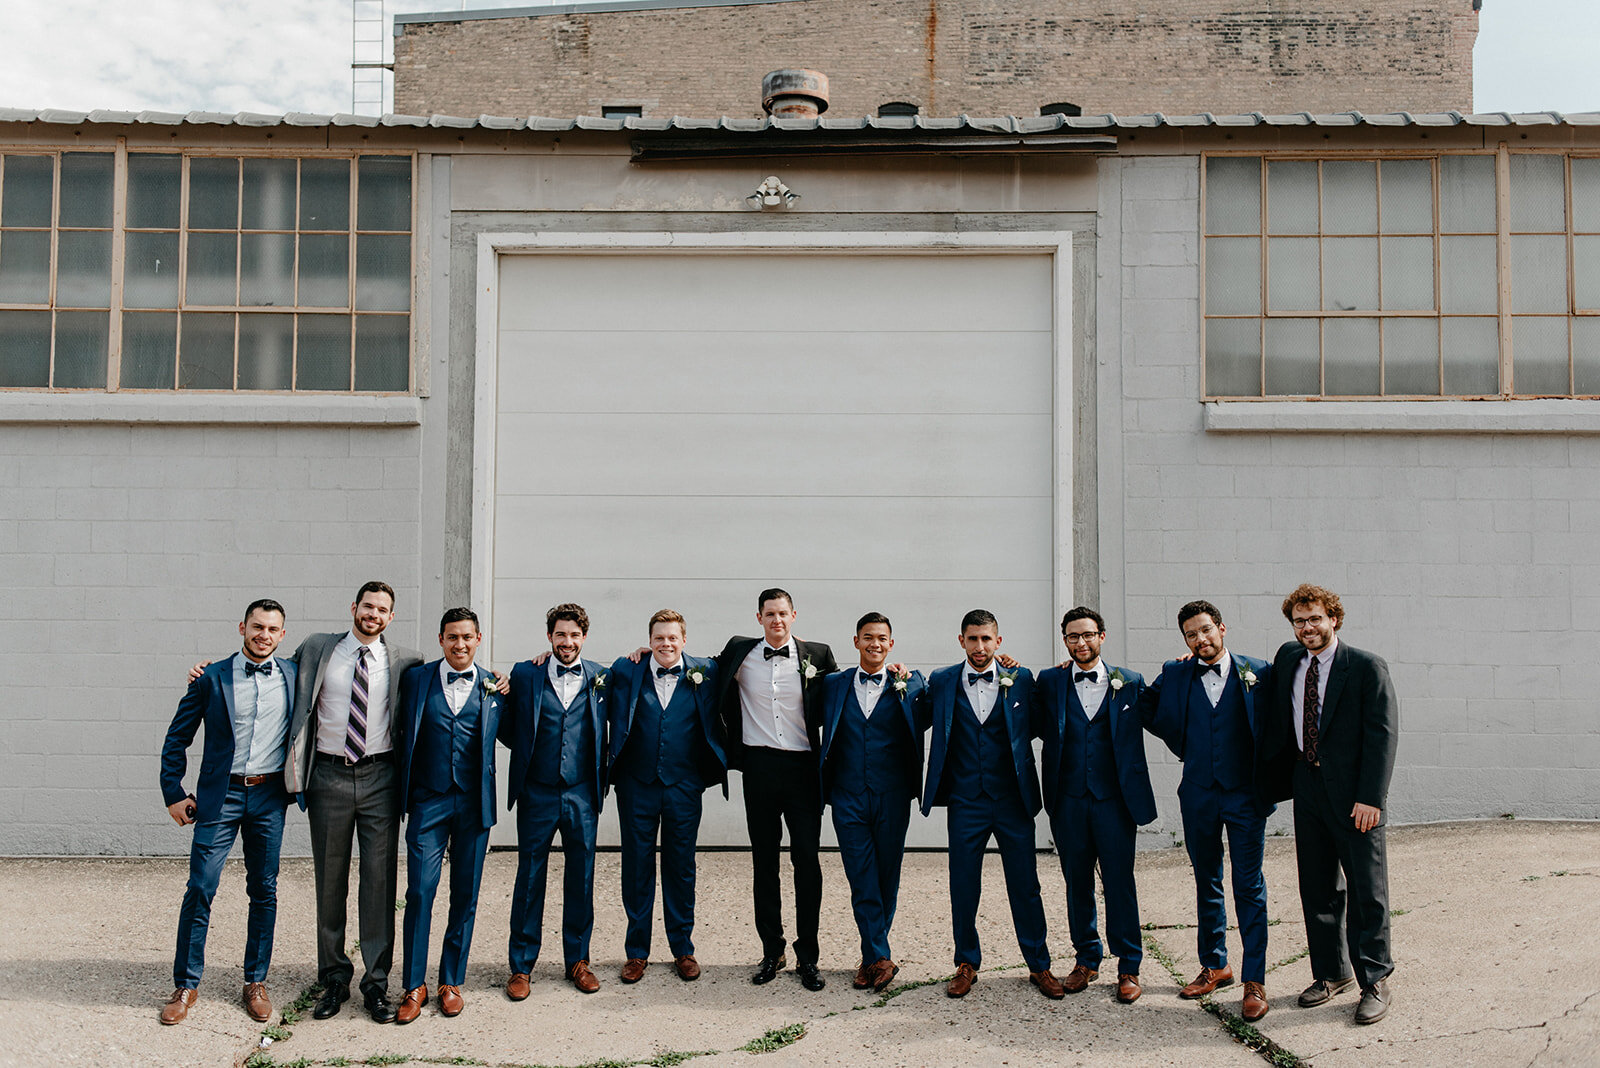 14 Wedding Party Groom Groomsmen Navy Suits.jpg